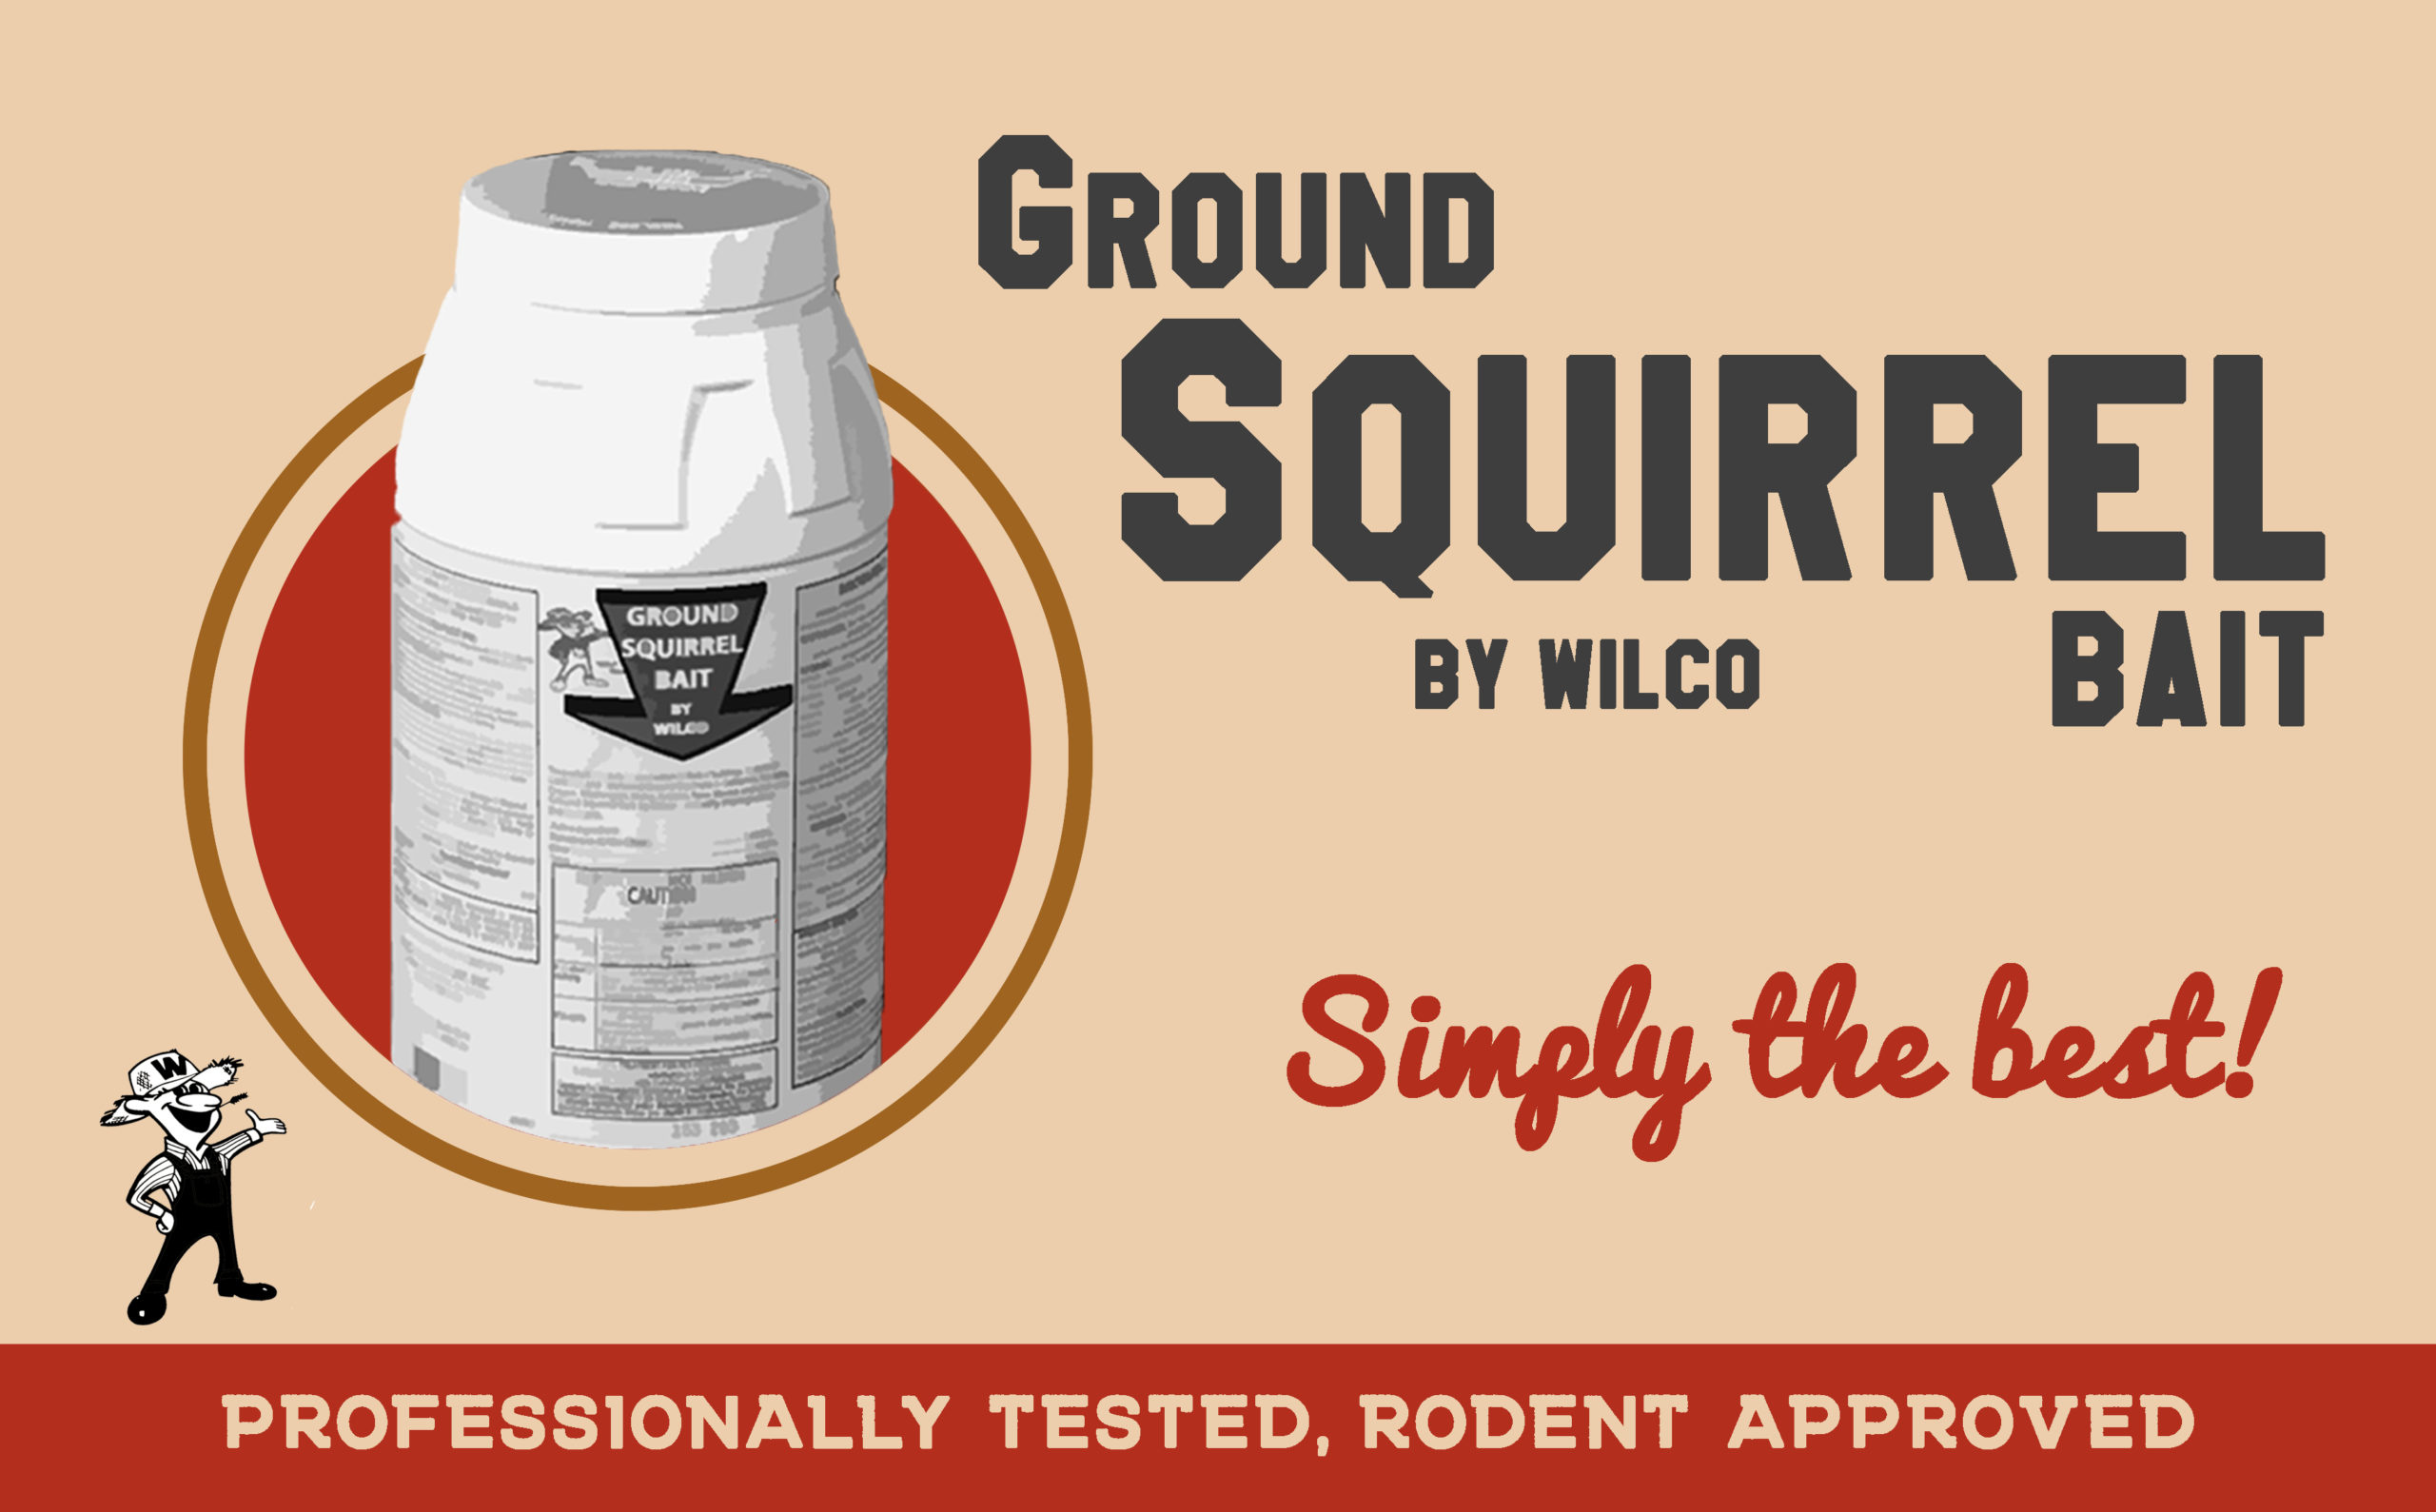 Wilco Ground Squirrel Bait